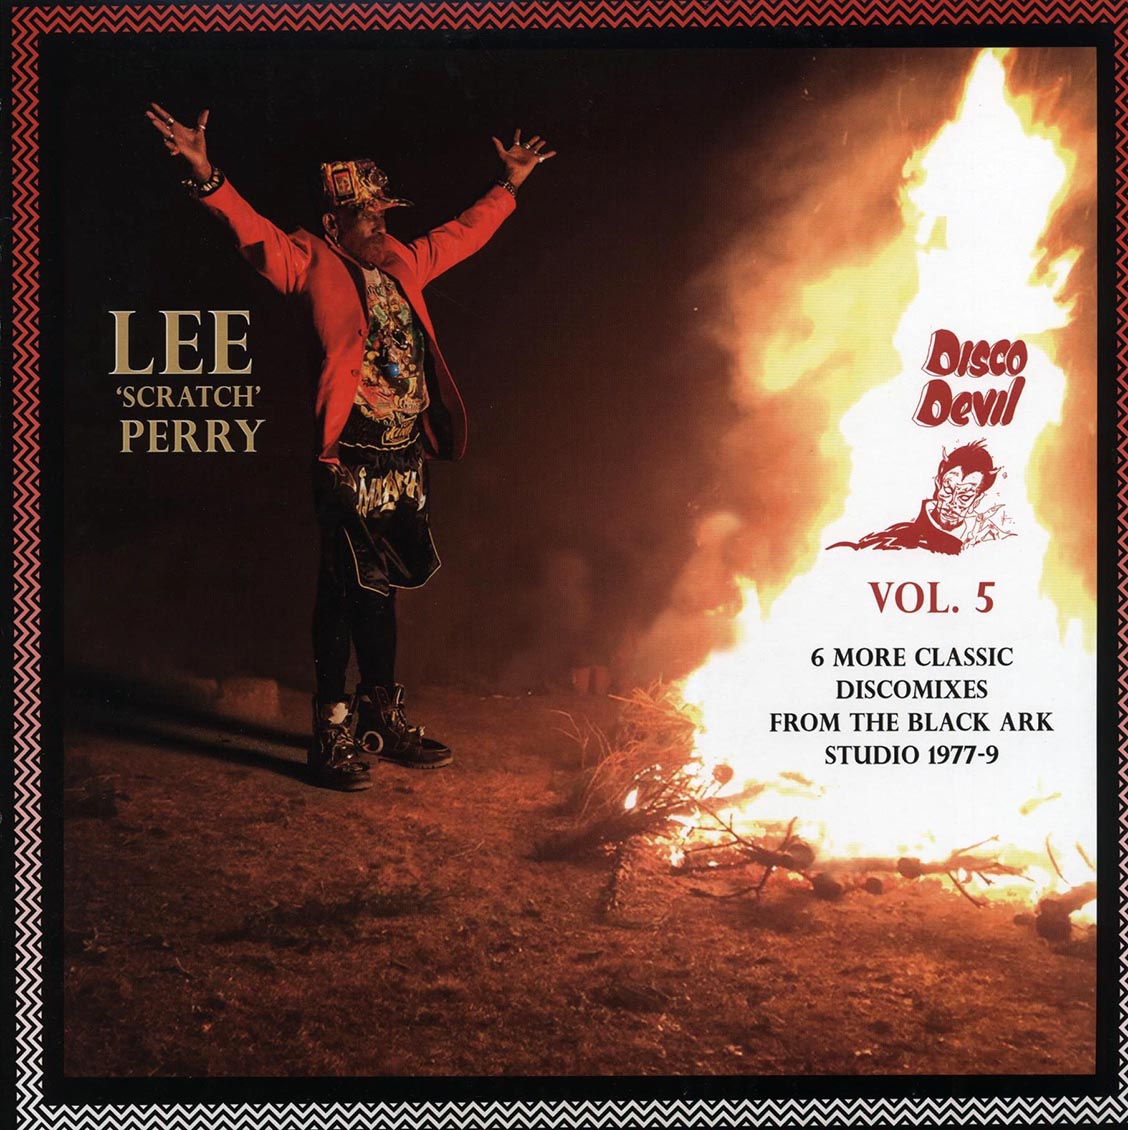 Lee "Scratch" Perry - Disco Devil Vol. 5 [2020] [New Vinyl Record LP]